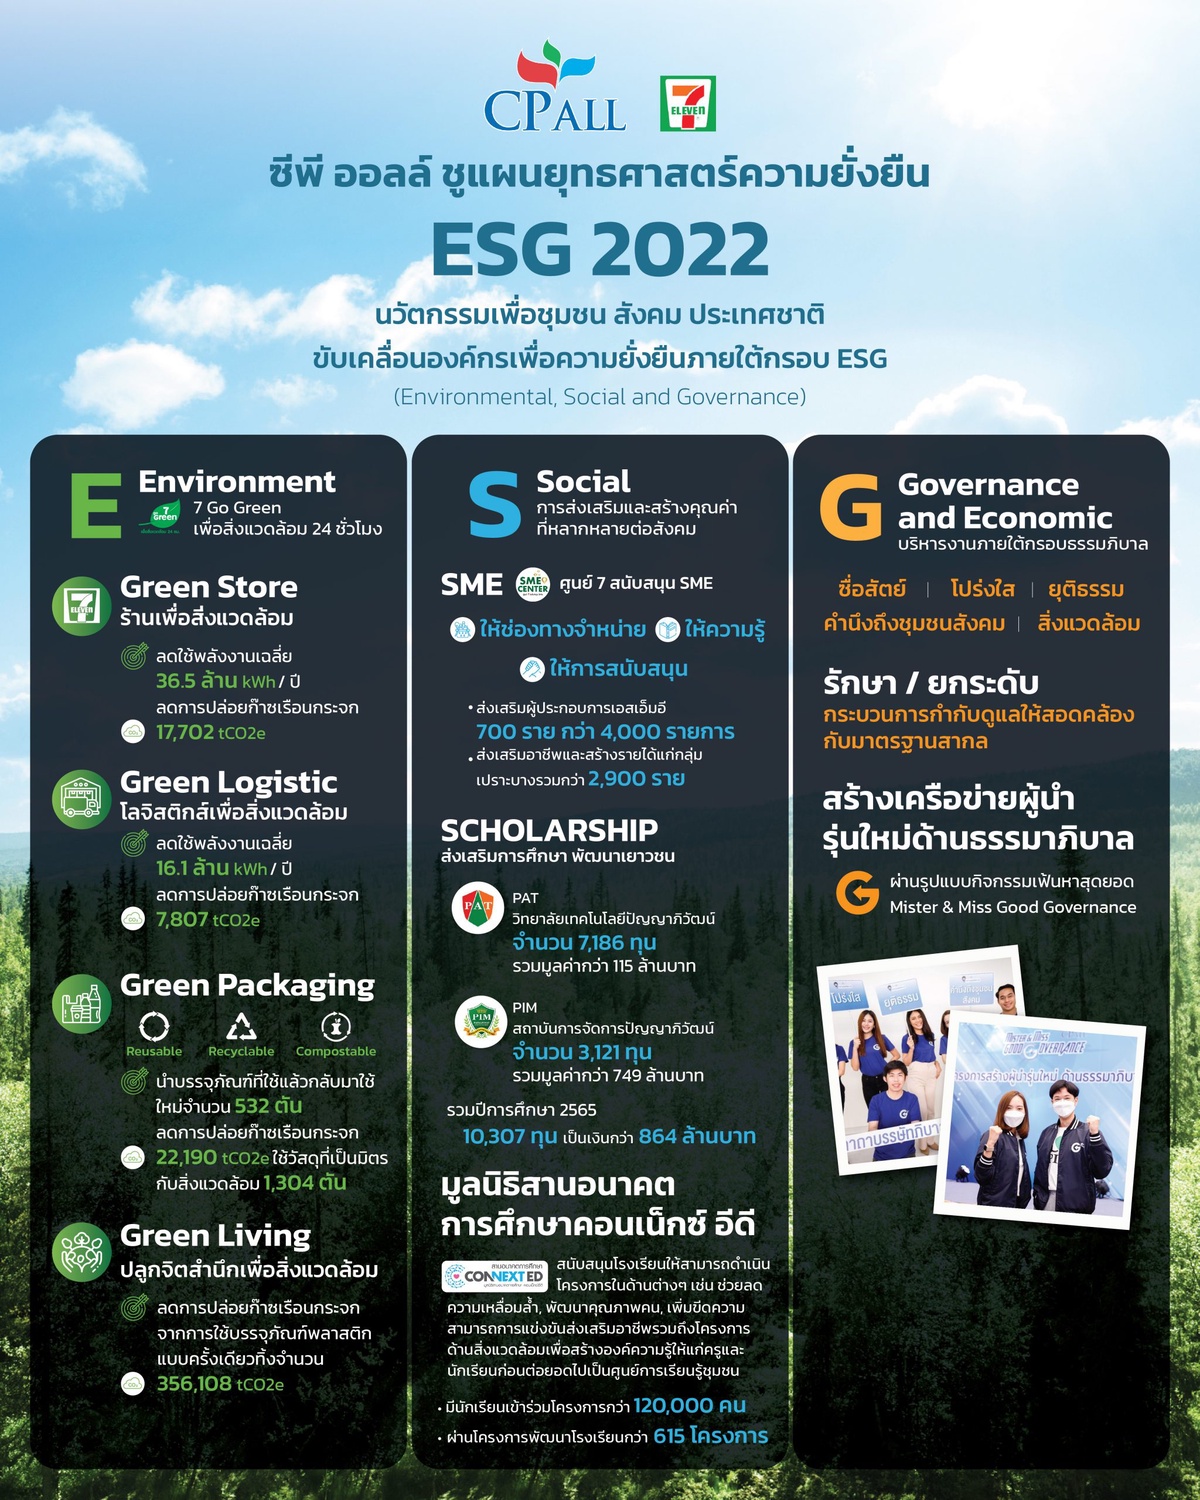 ซีพี ออลล์ ชูแผนยุทธศาสตร์ความยั่งยืน ESG 2022 ชูนวัตกรรมเพื่อชุมชน สังคม ประเทศชาติ